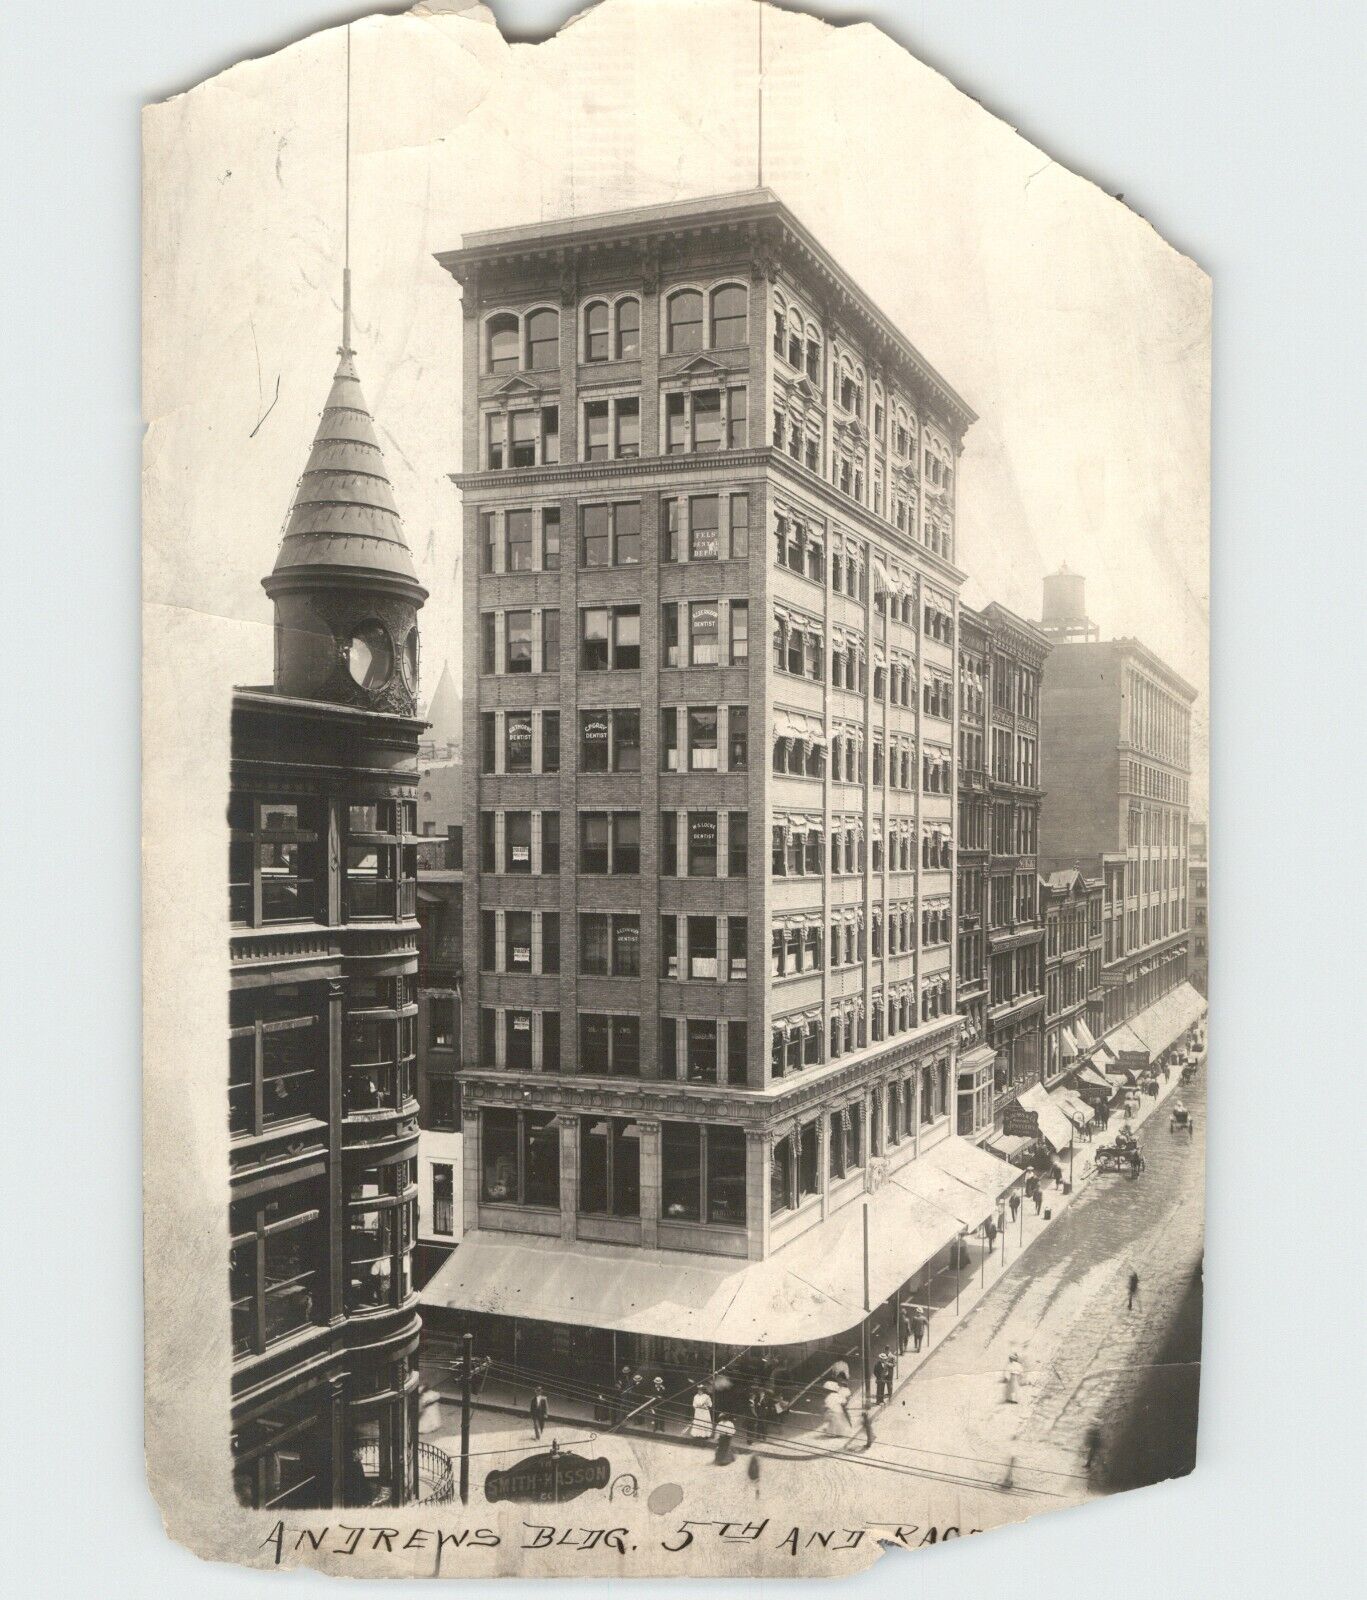 Andrews Building Cincinnati Ohio Rare c.1910s Architecture Vintage Photo